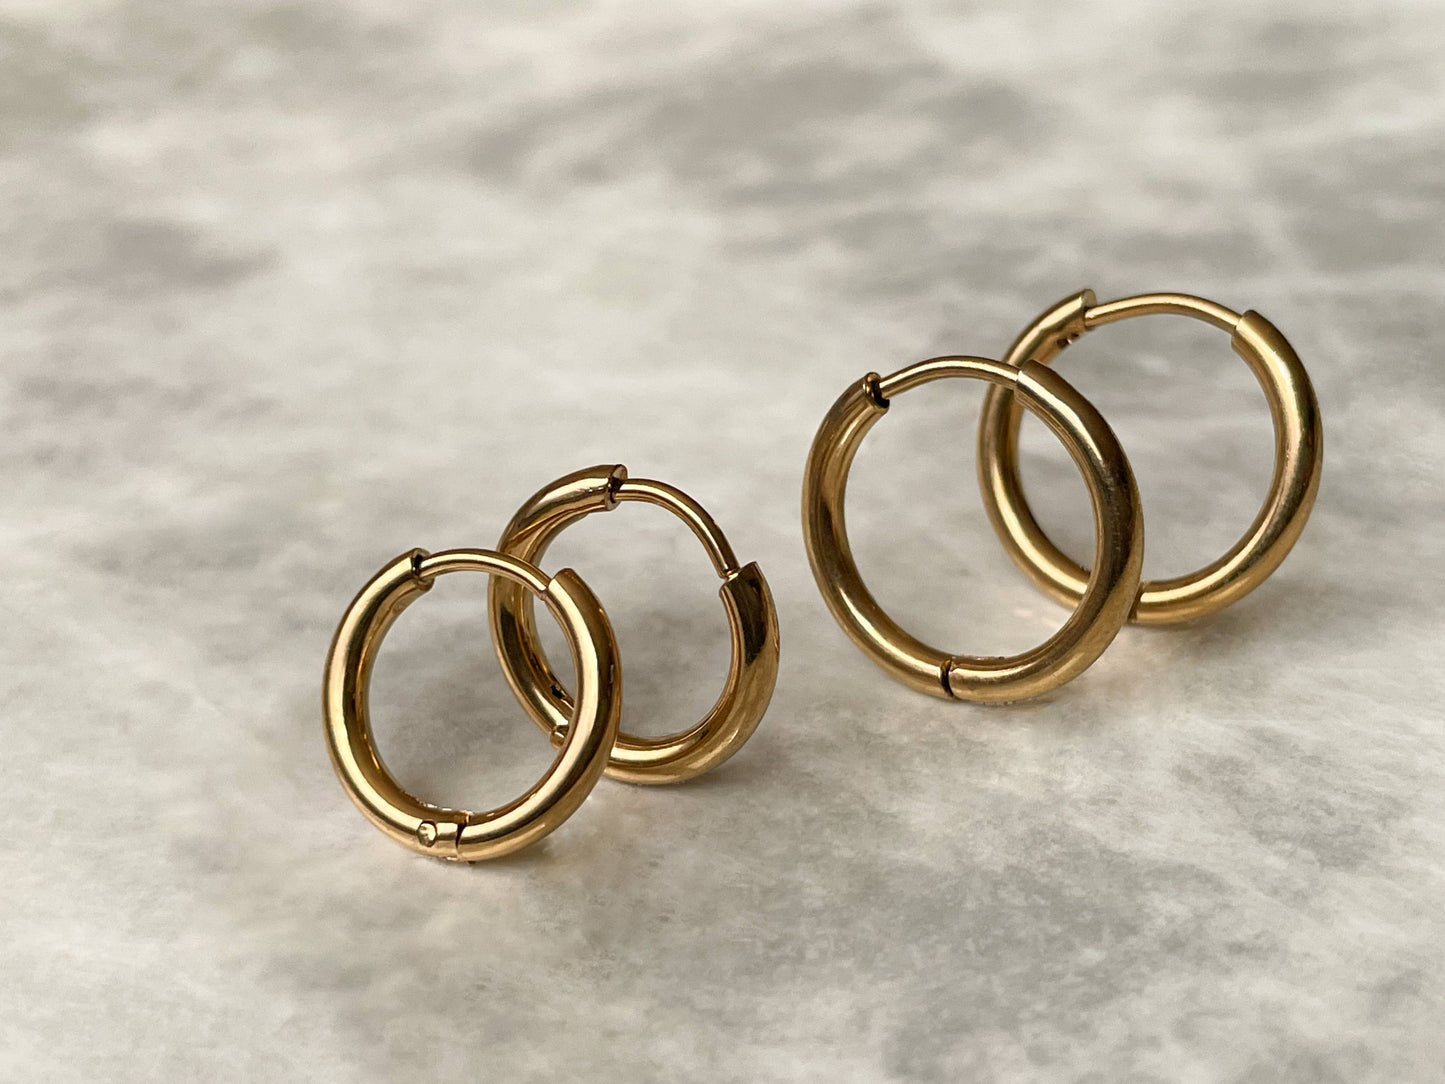 Thin Gold Hoops - Gold Huggie Hoop Earrings Minimalist 0334: 10 MM